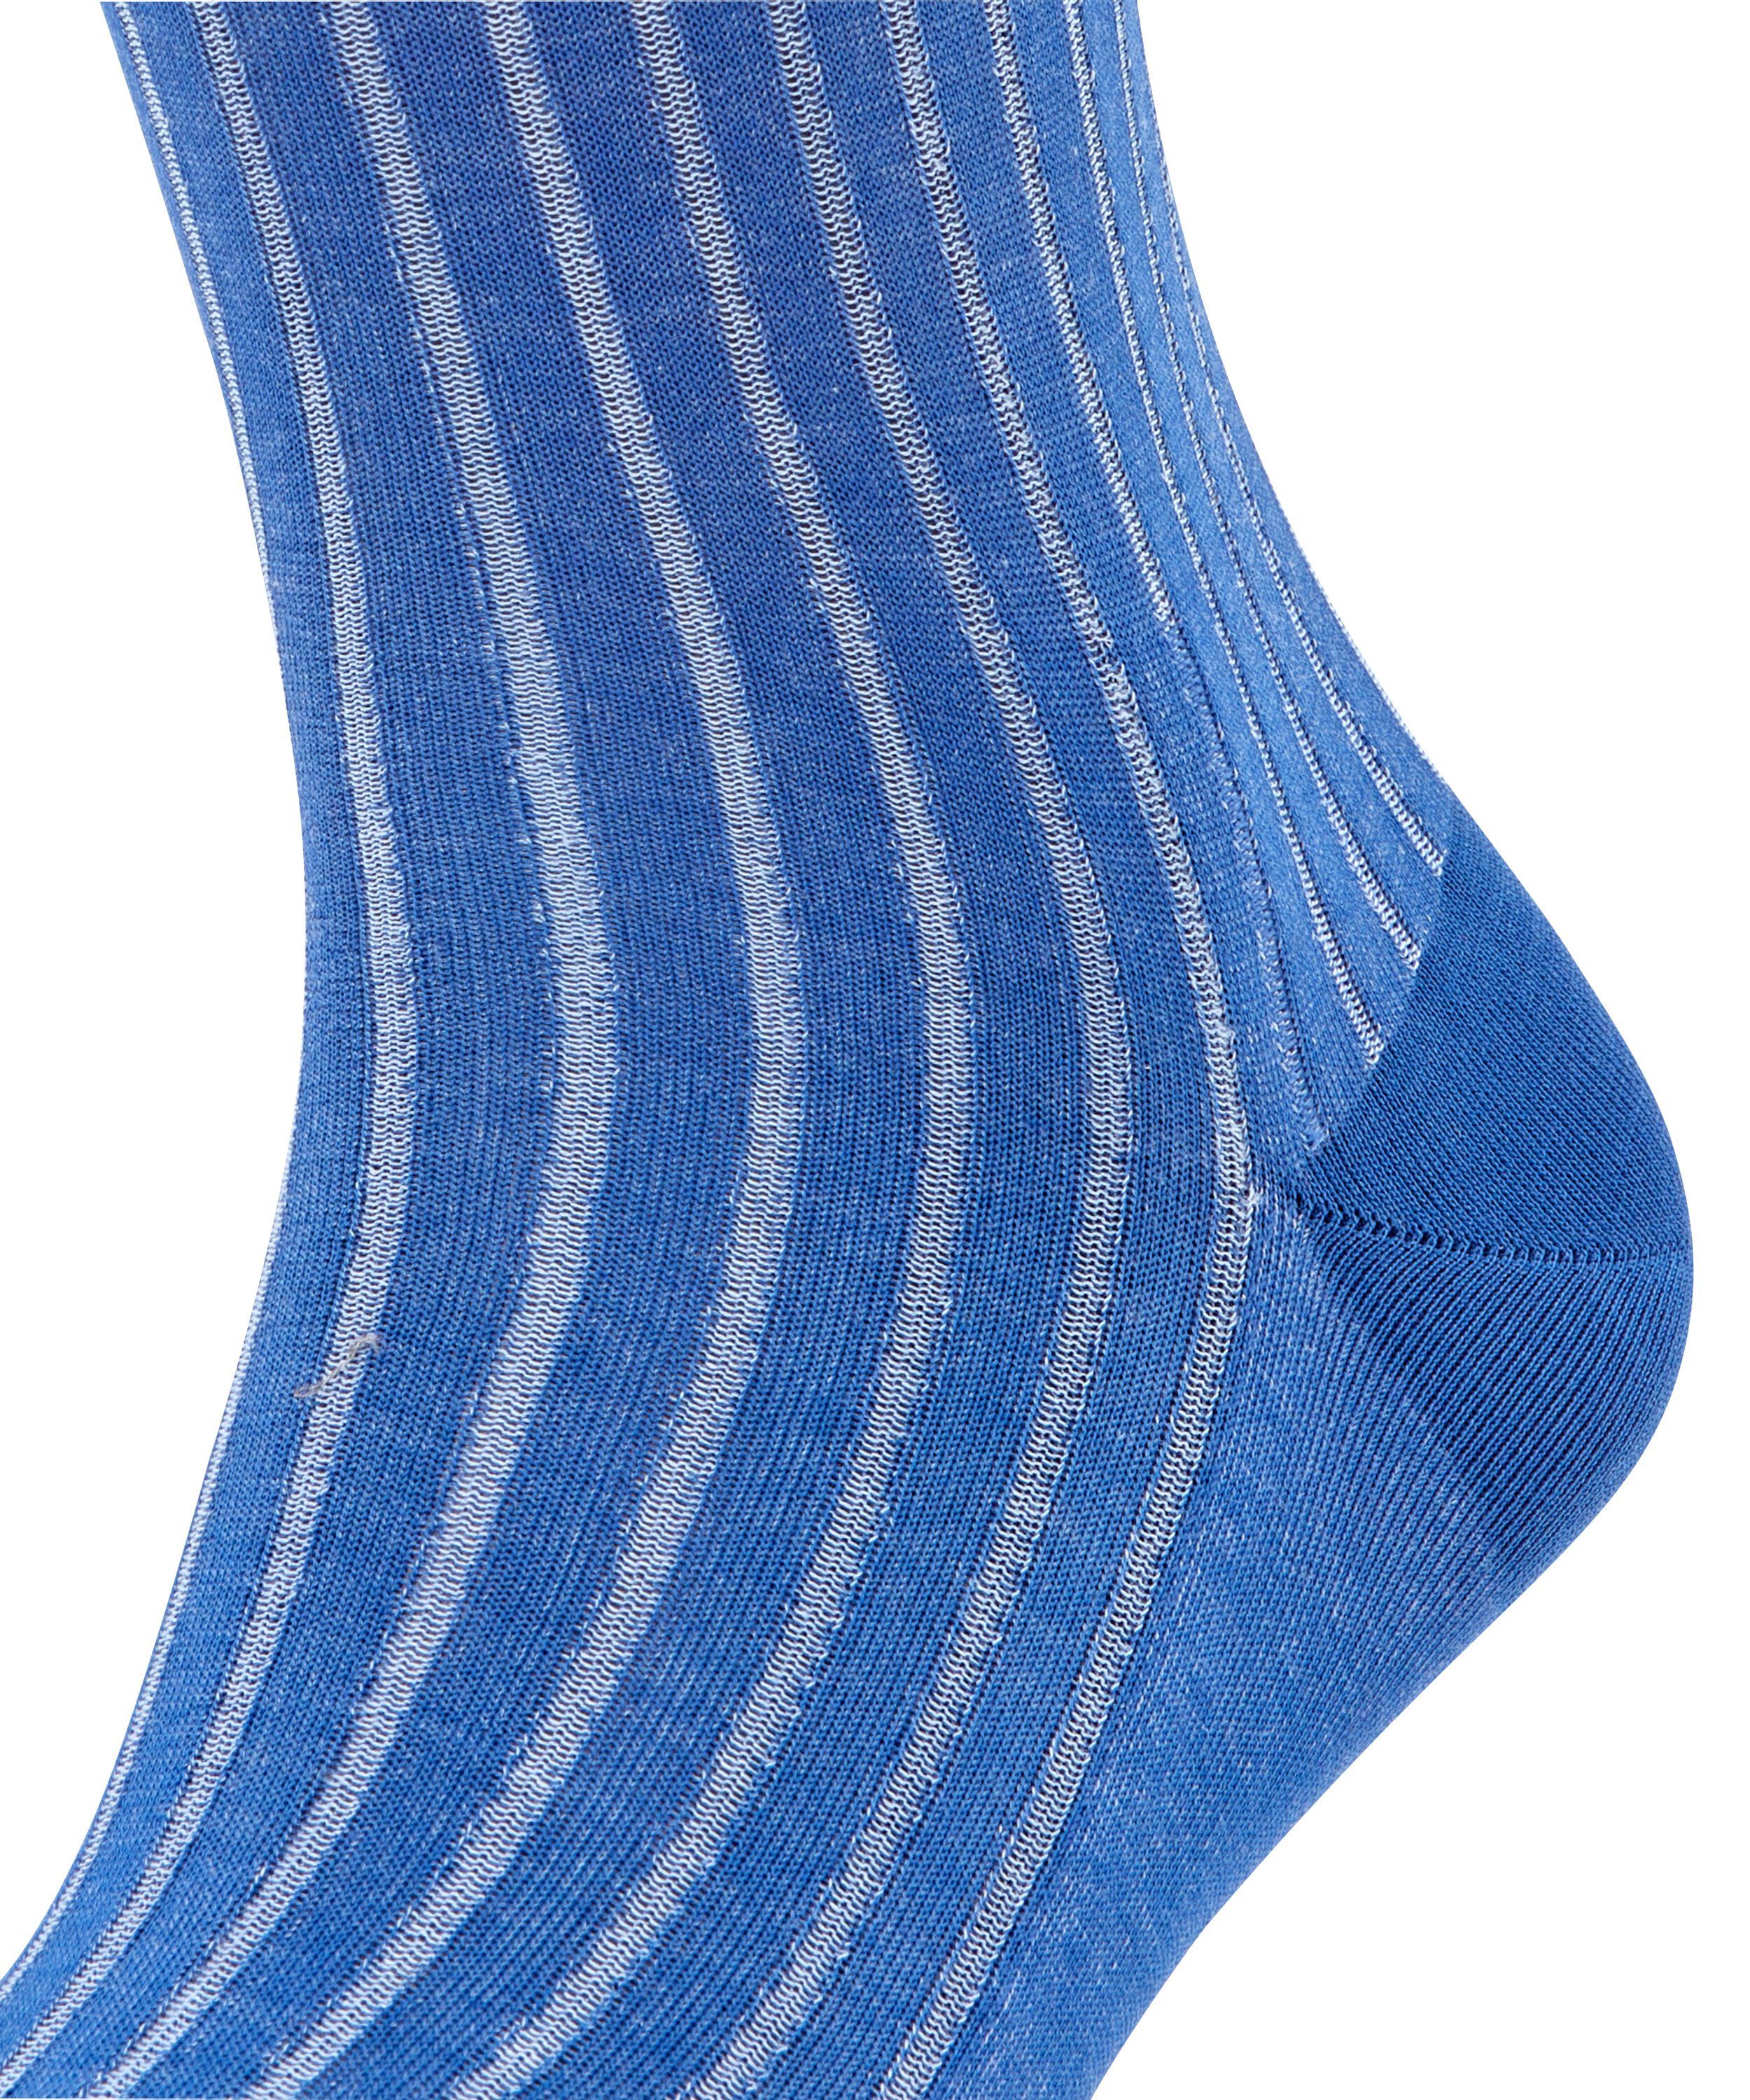 (6057) FALKE Shadow paris (1-Paar) Socken blue